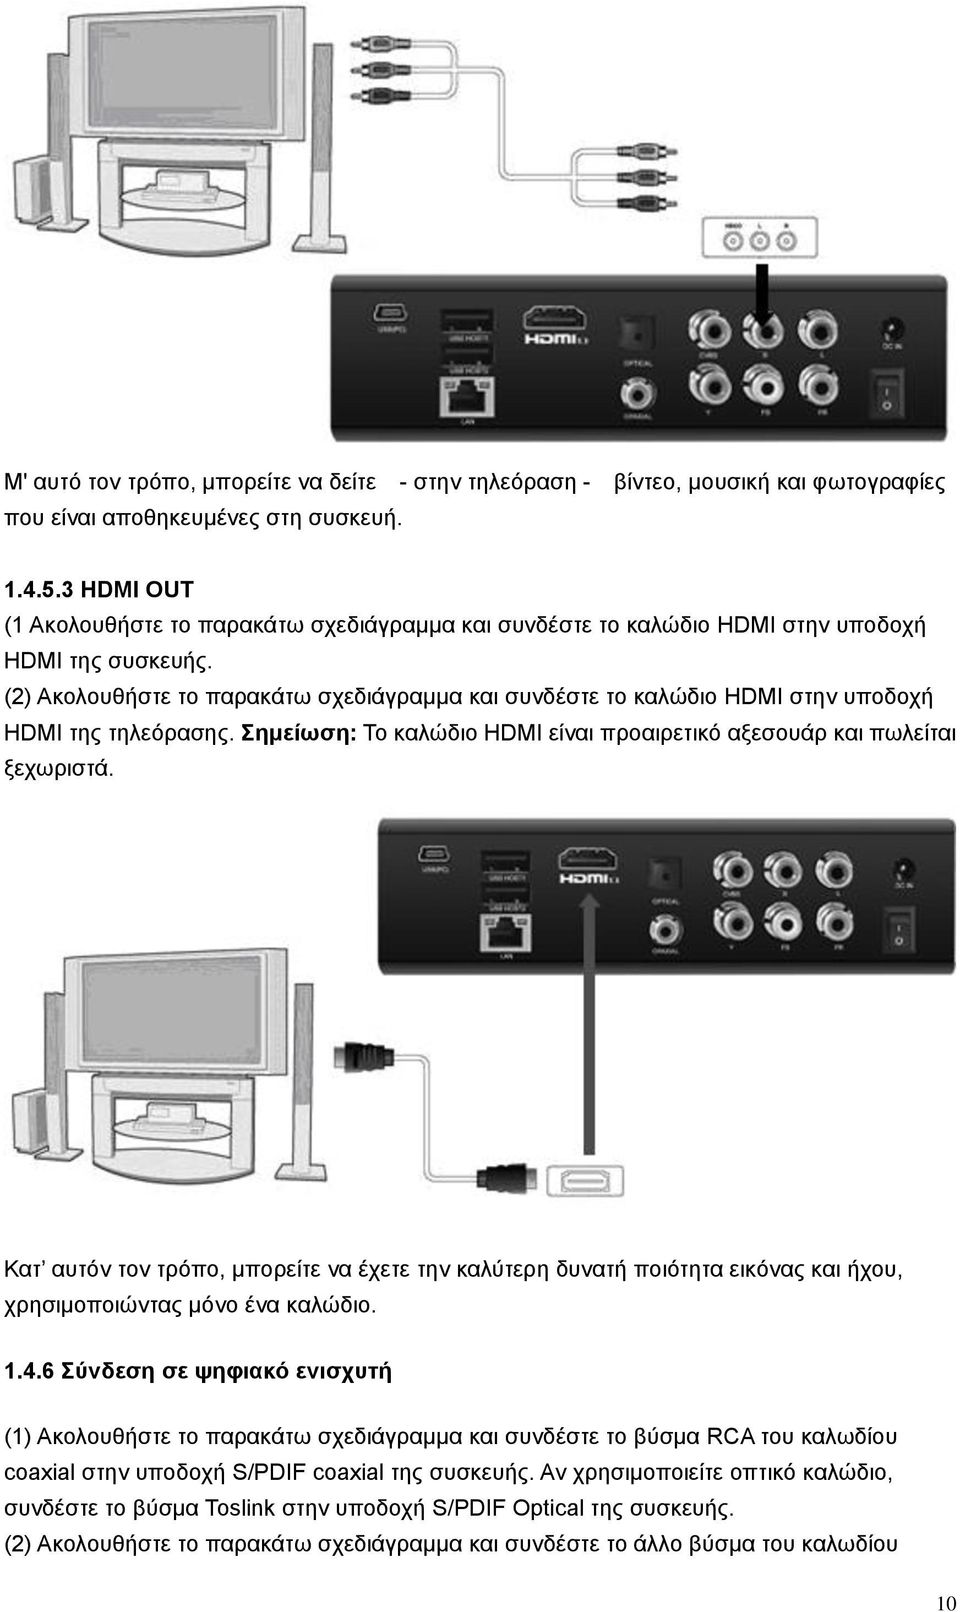 (2) Ακολουθήστε το παρακάτω σχεδιάγραμμα και συνδέστε το καλώδιο HDMI στην υποδοχή HDMI της τηλεόρασης. Σημείωση: Το καλώδιο HDMI είναι προαιρετικό αξεσουάρ και πωλείται ξεχωριστά.